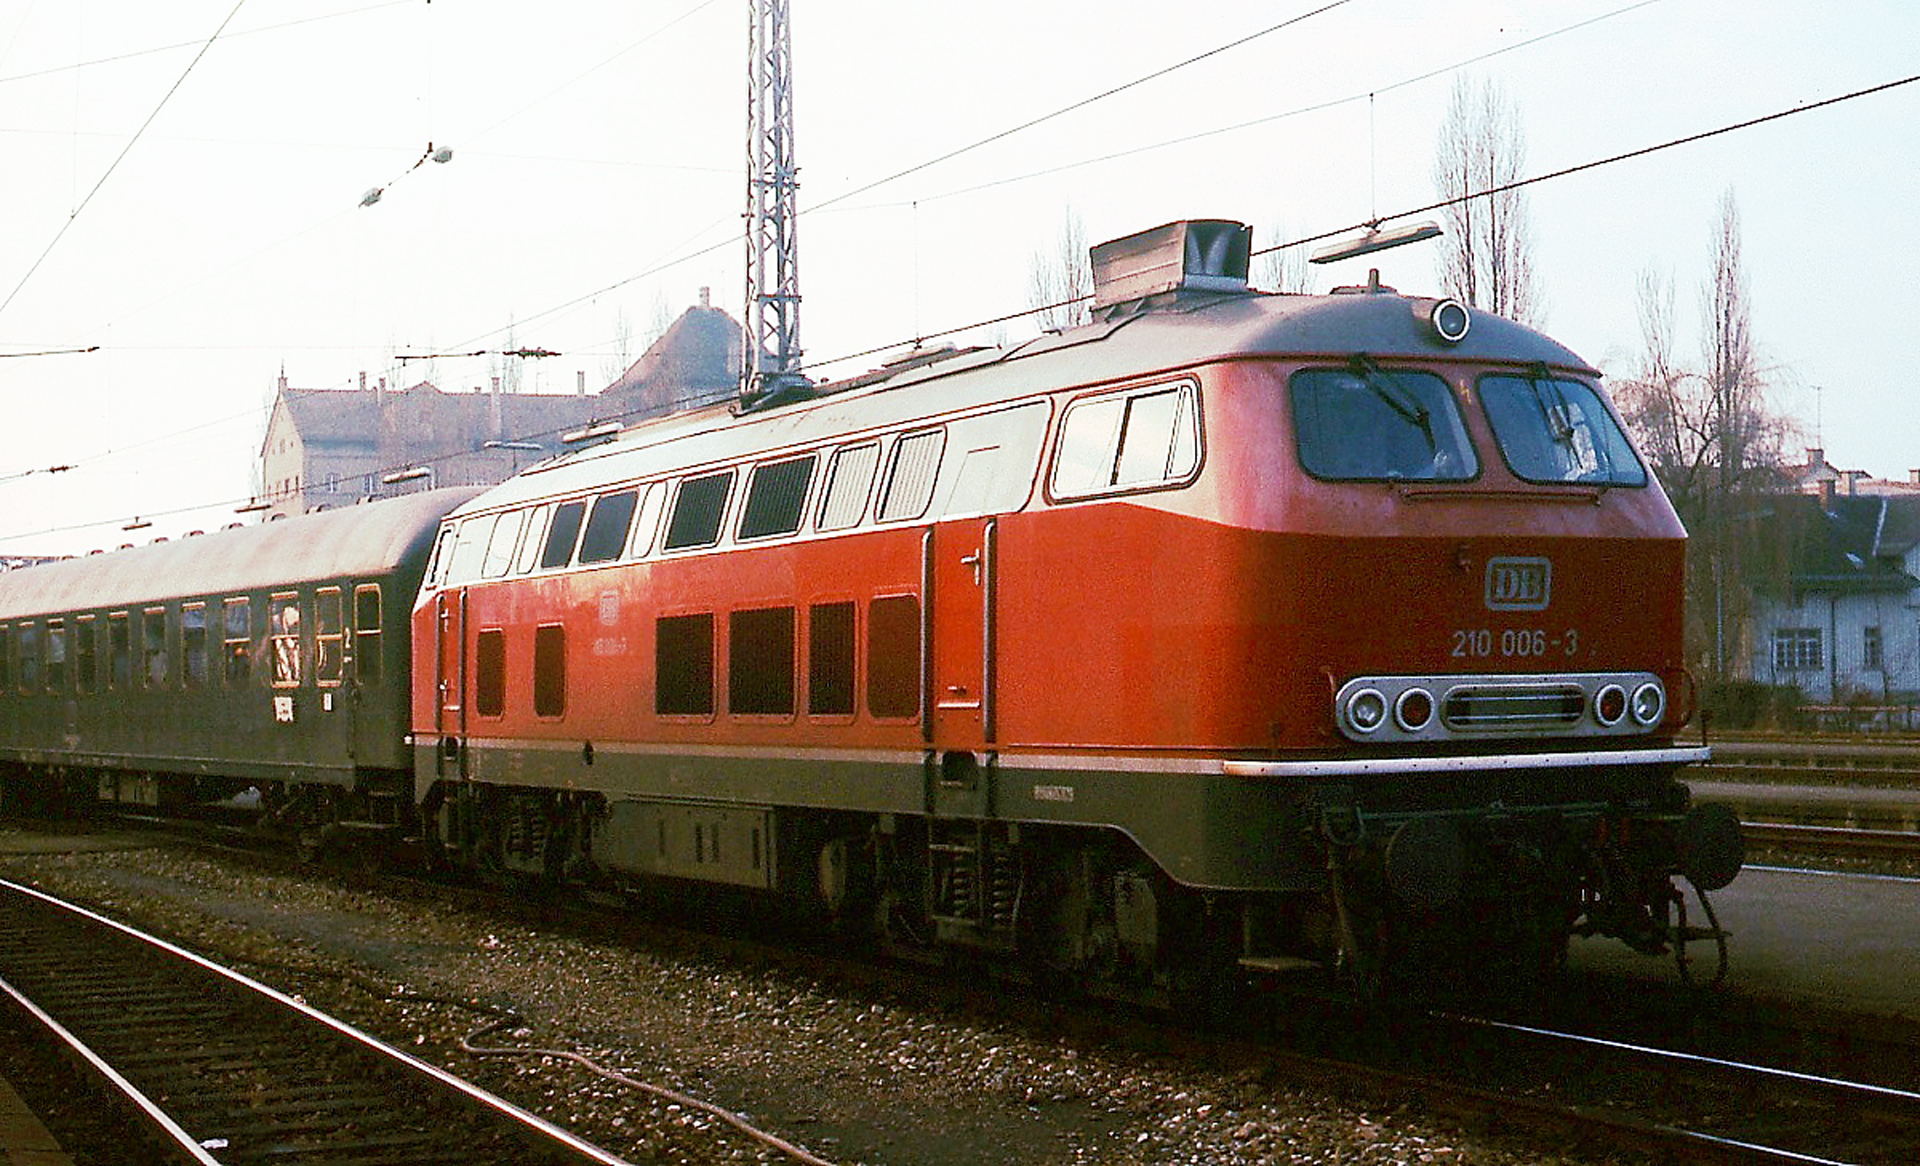 Германский газотурбинный тепловоз DB Class 210 006-3